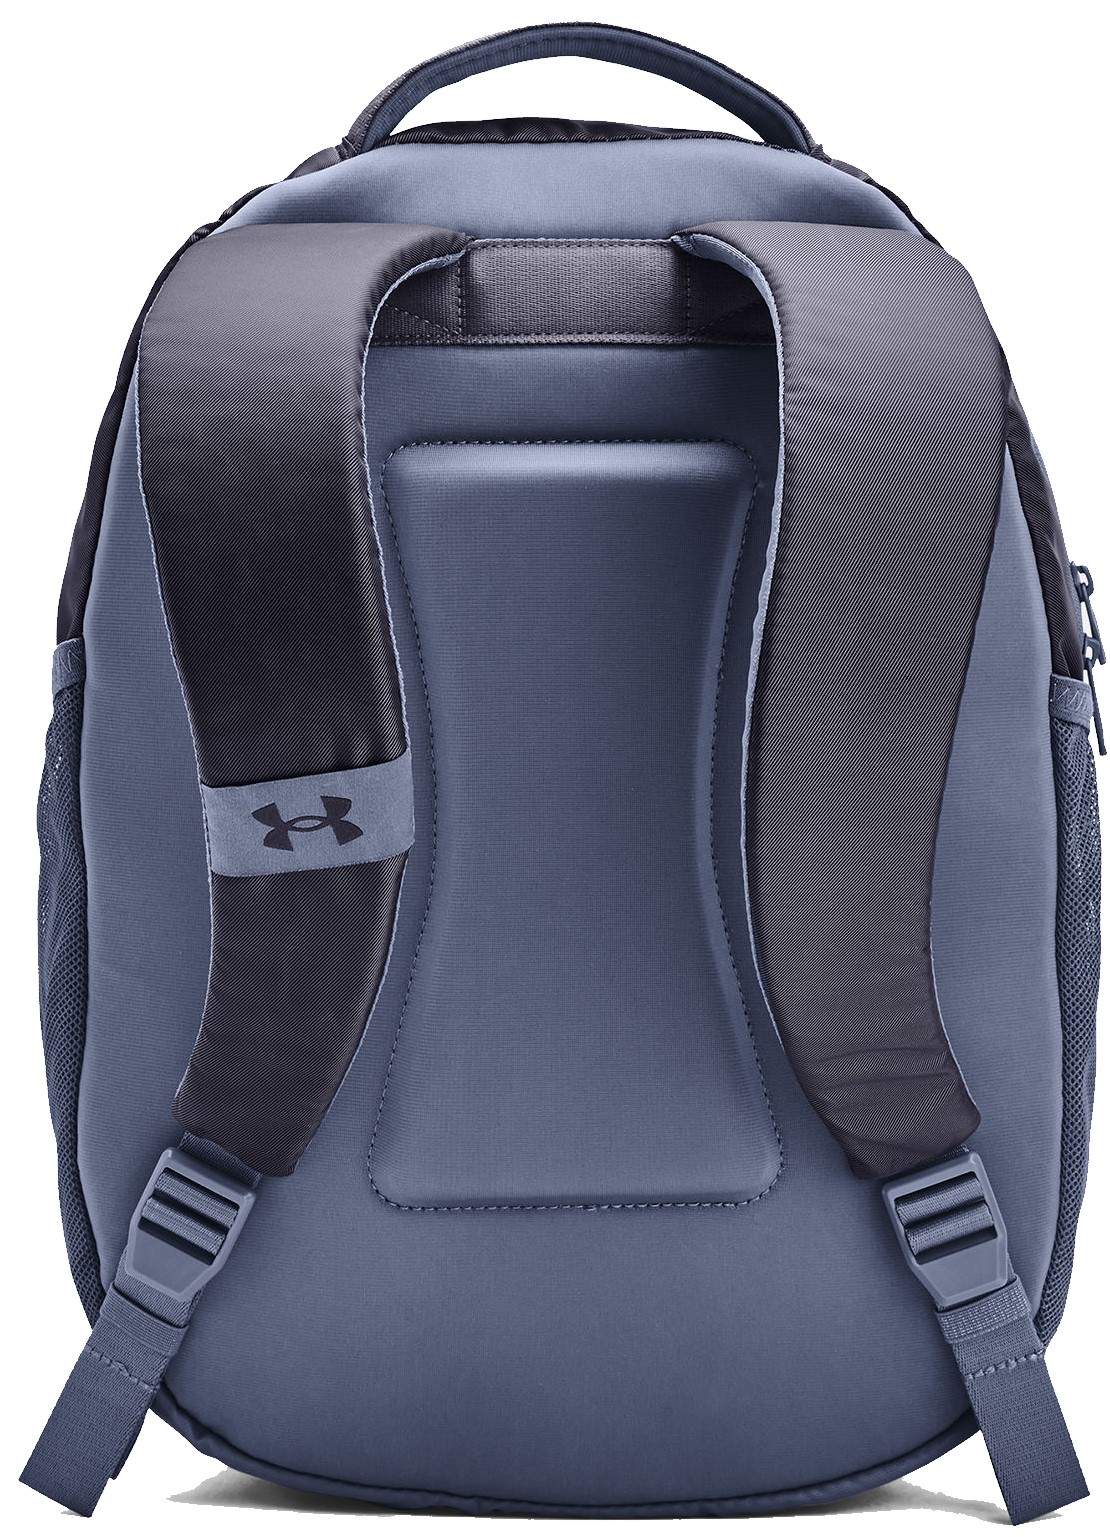 Signature Backpack – Melanated Luxury